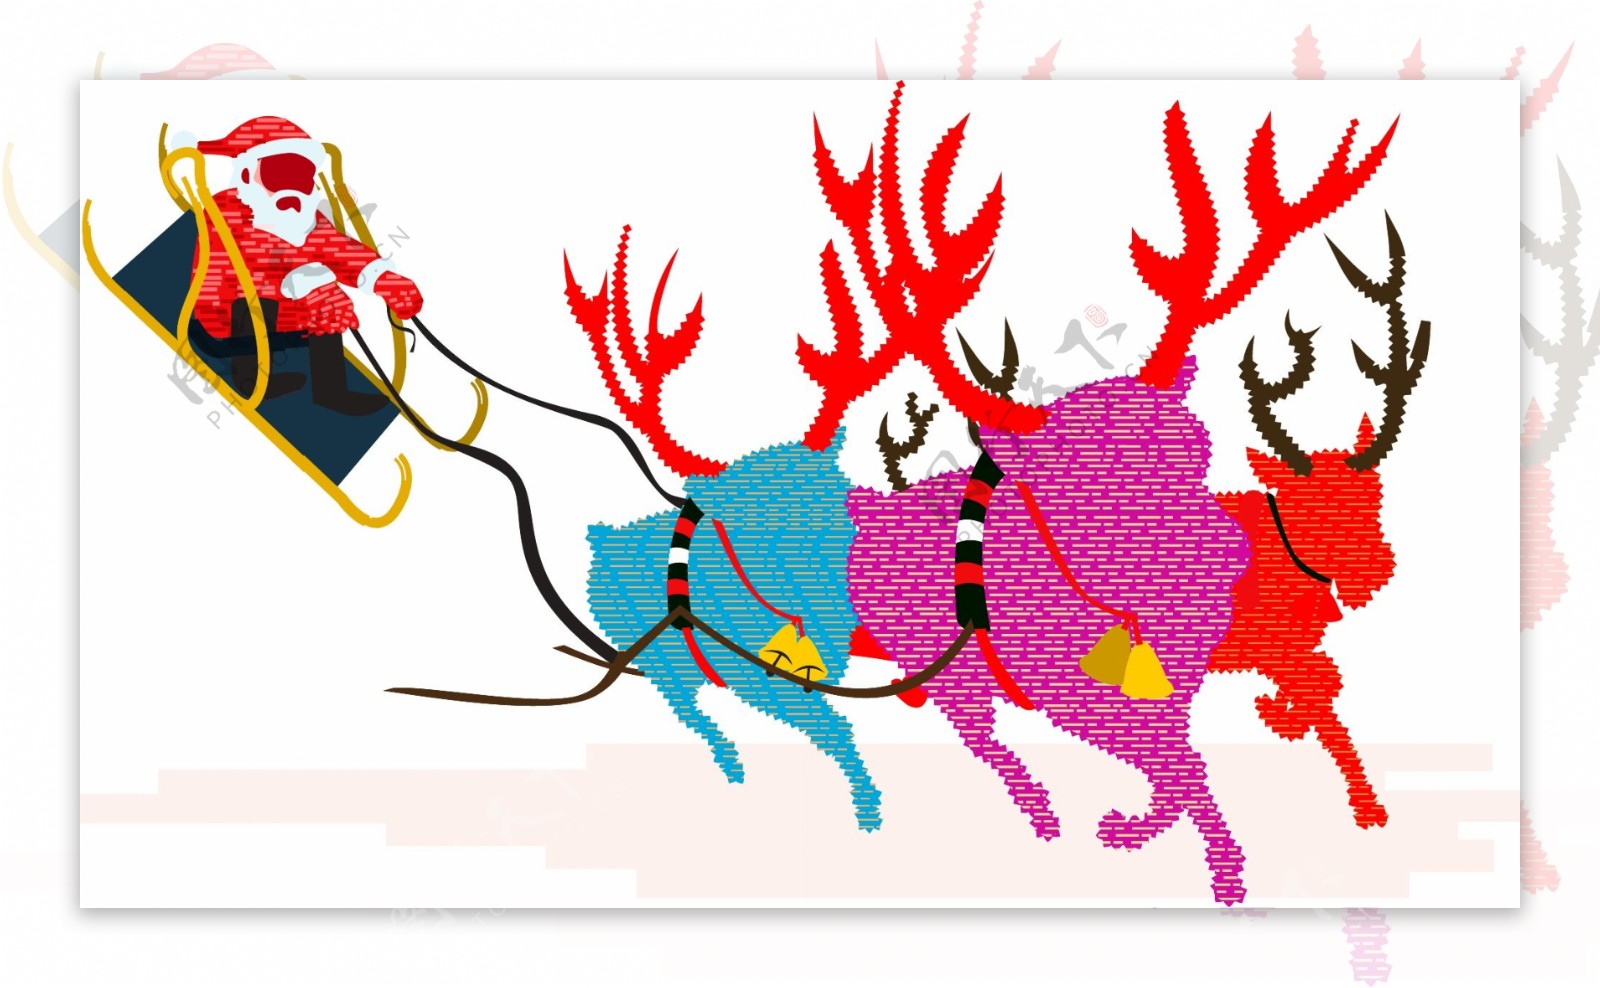 手绘圣诞节圣诞老人驾驶麋鹿拉的雪橇飞奔